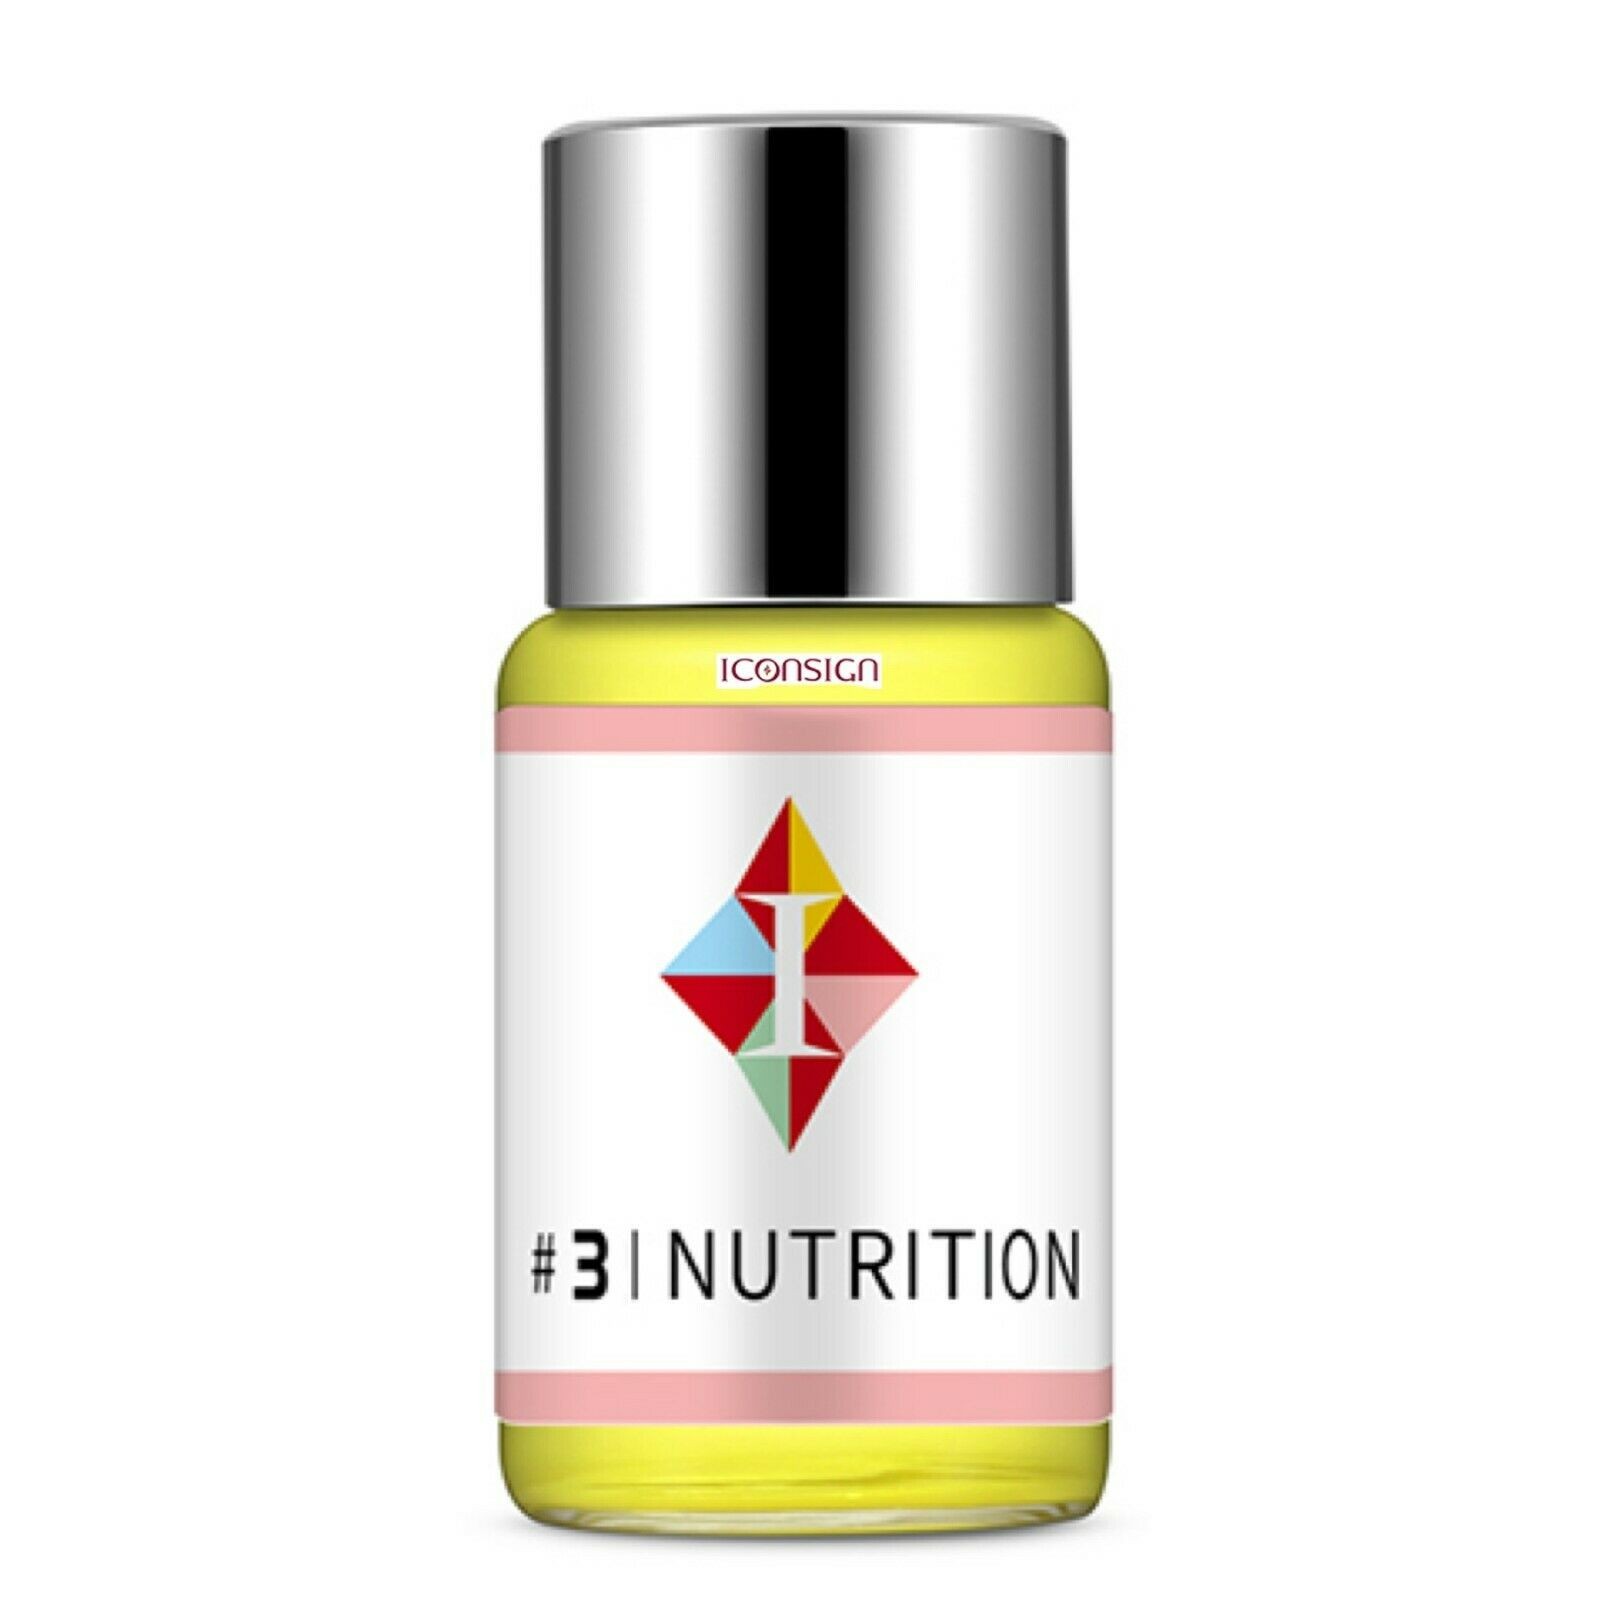 Wimpernlifting #3 Nutrition (1x Flasche mit 5ml) für Dauerwelle und Wimpernwelle